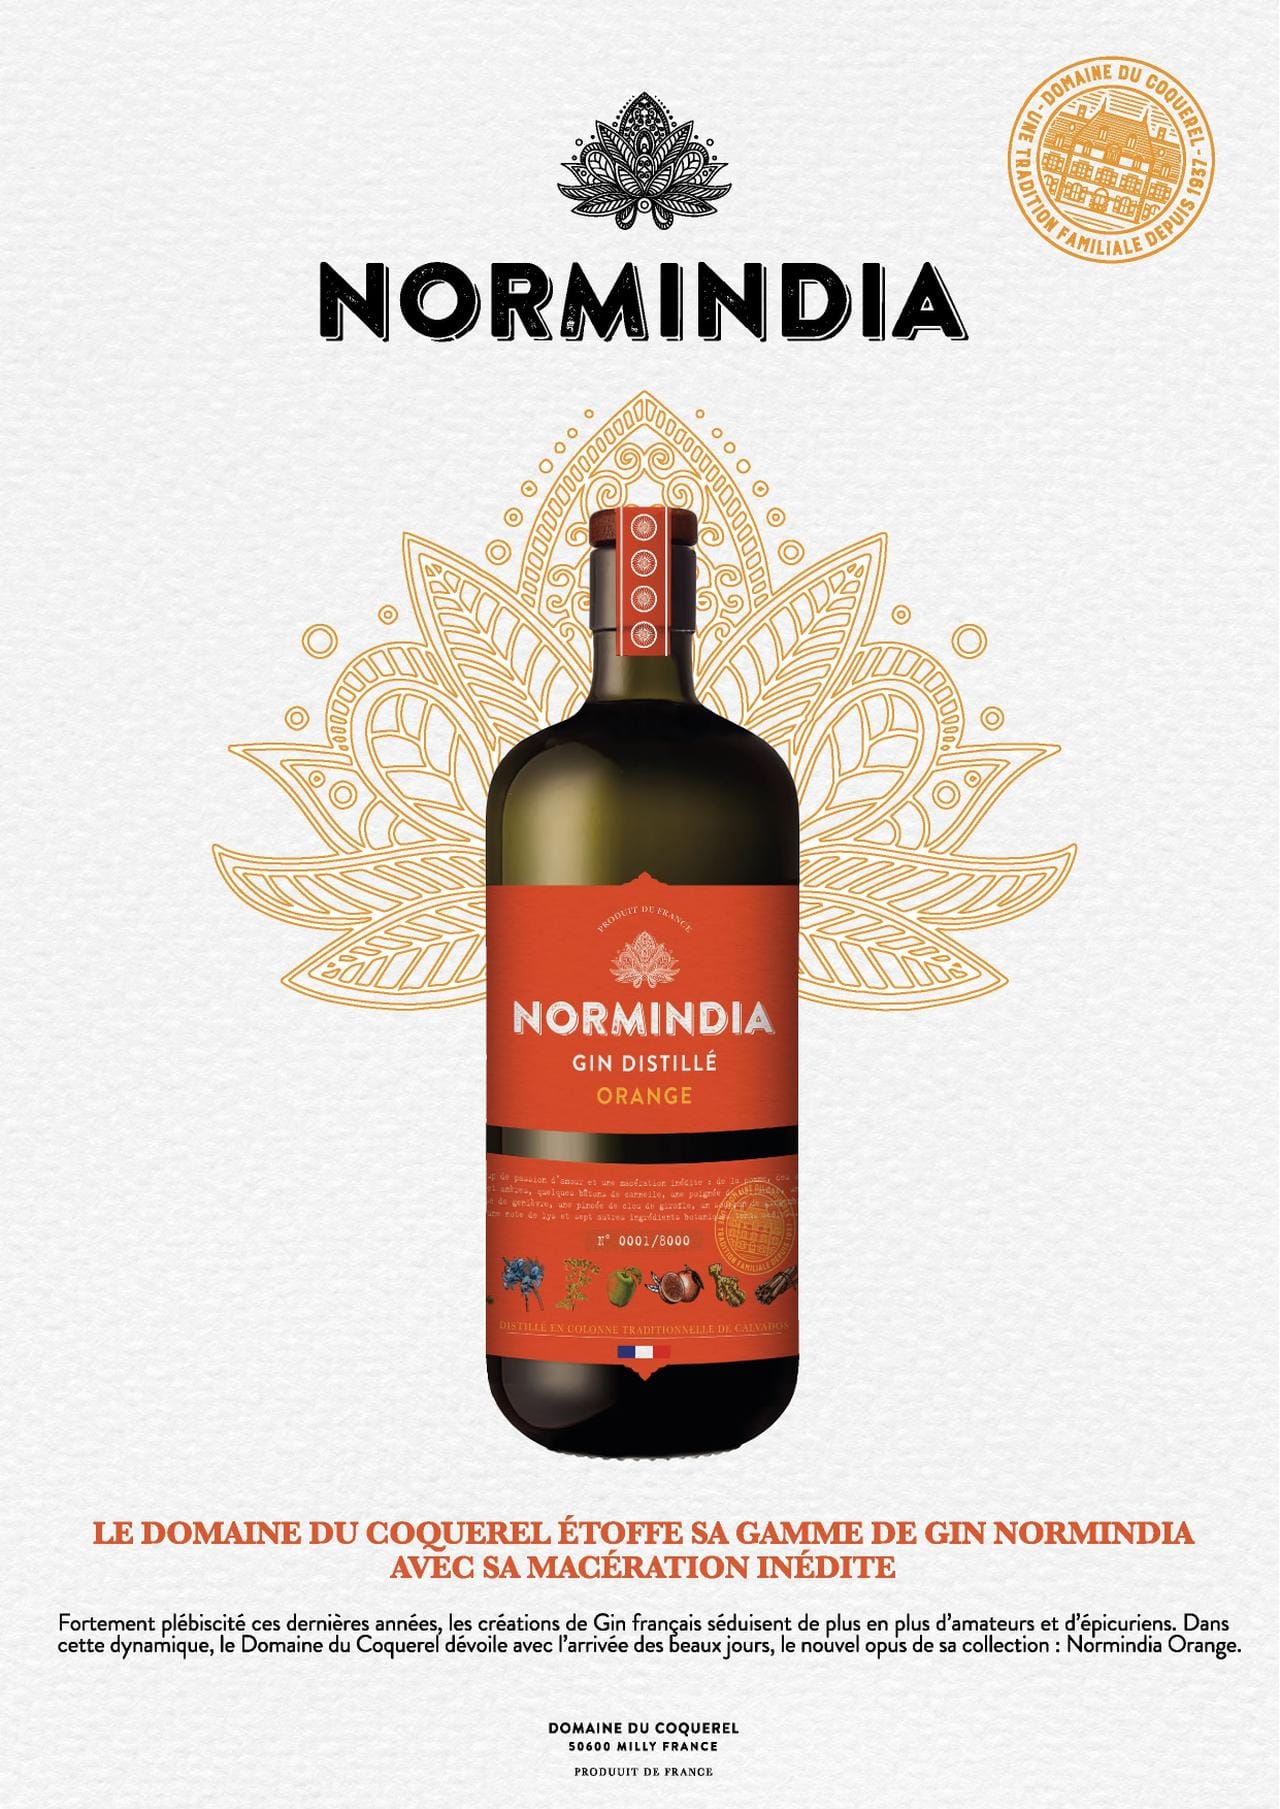 Le Domaine du Coquerel dévoile  Normindia Orange Gin, une nouvelle macération inédite